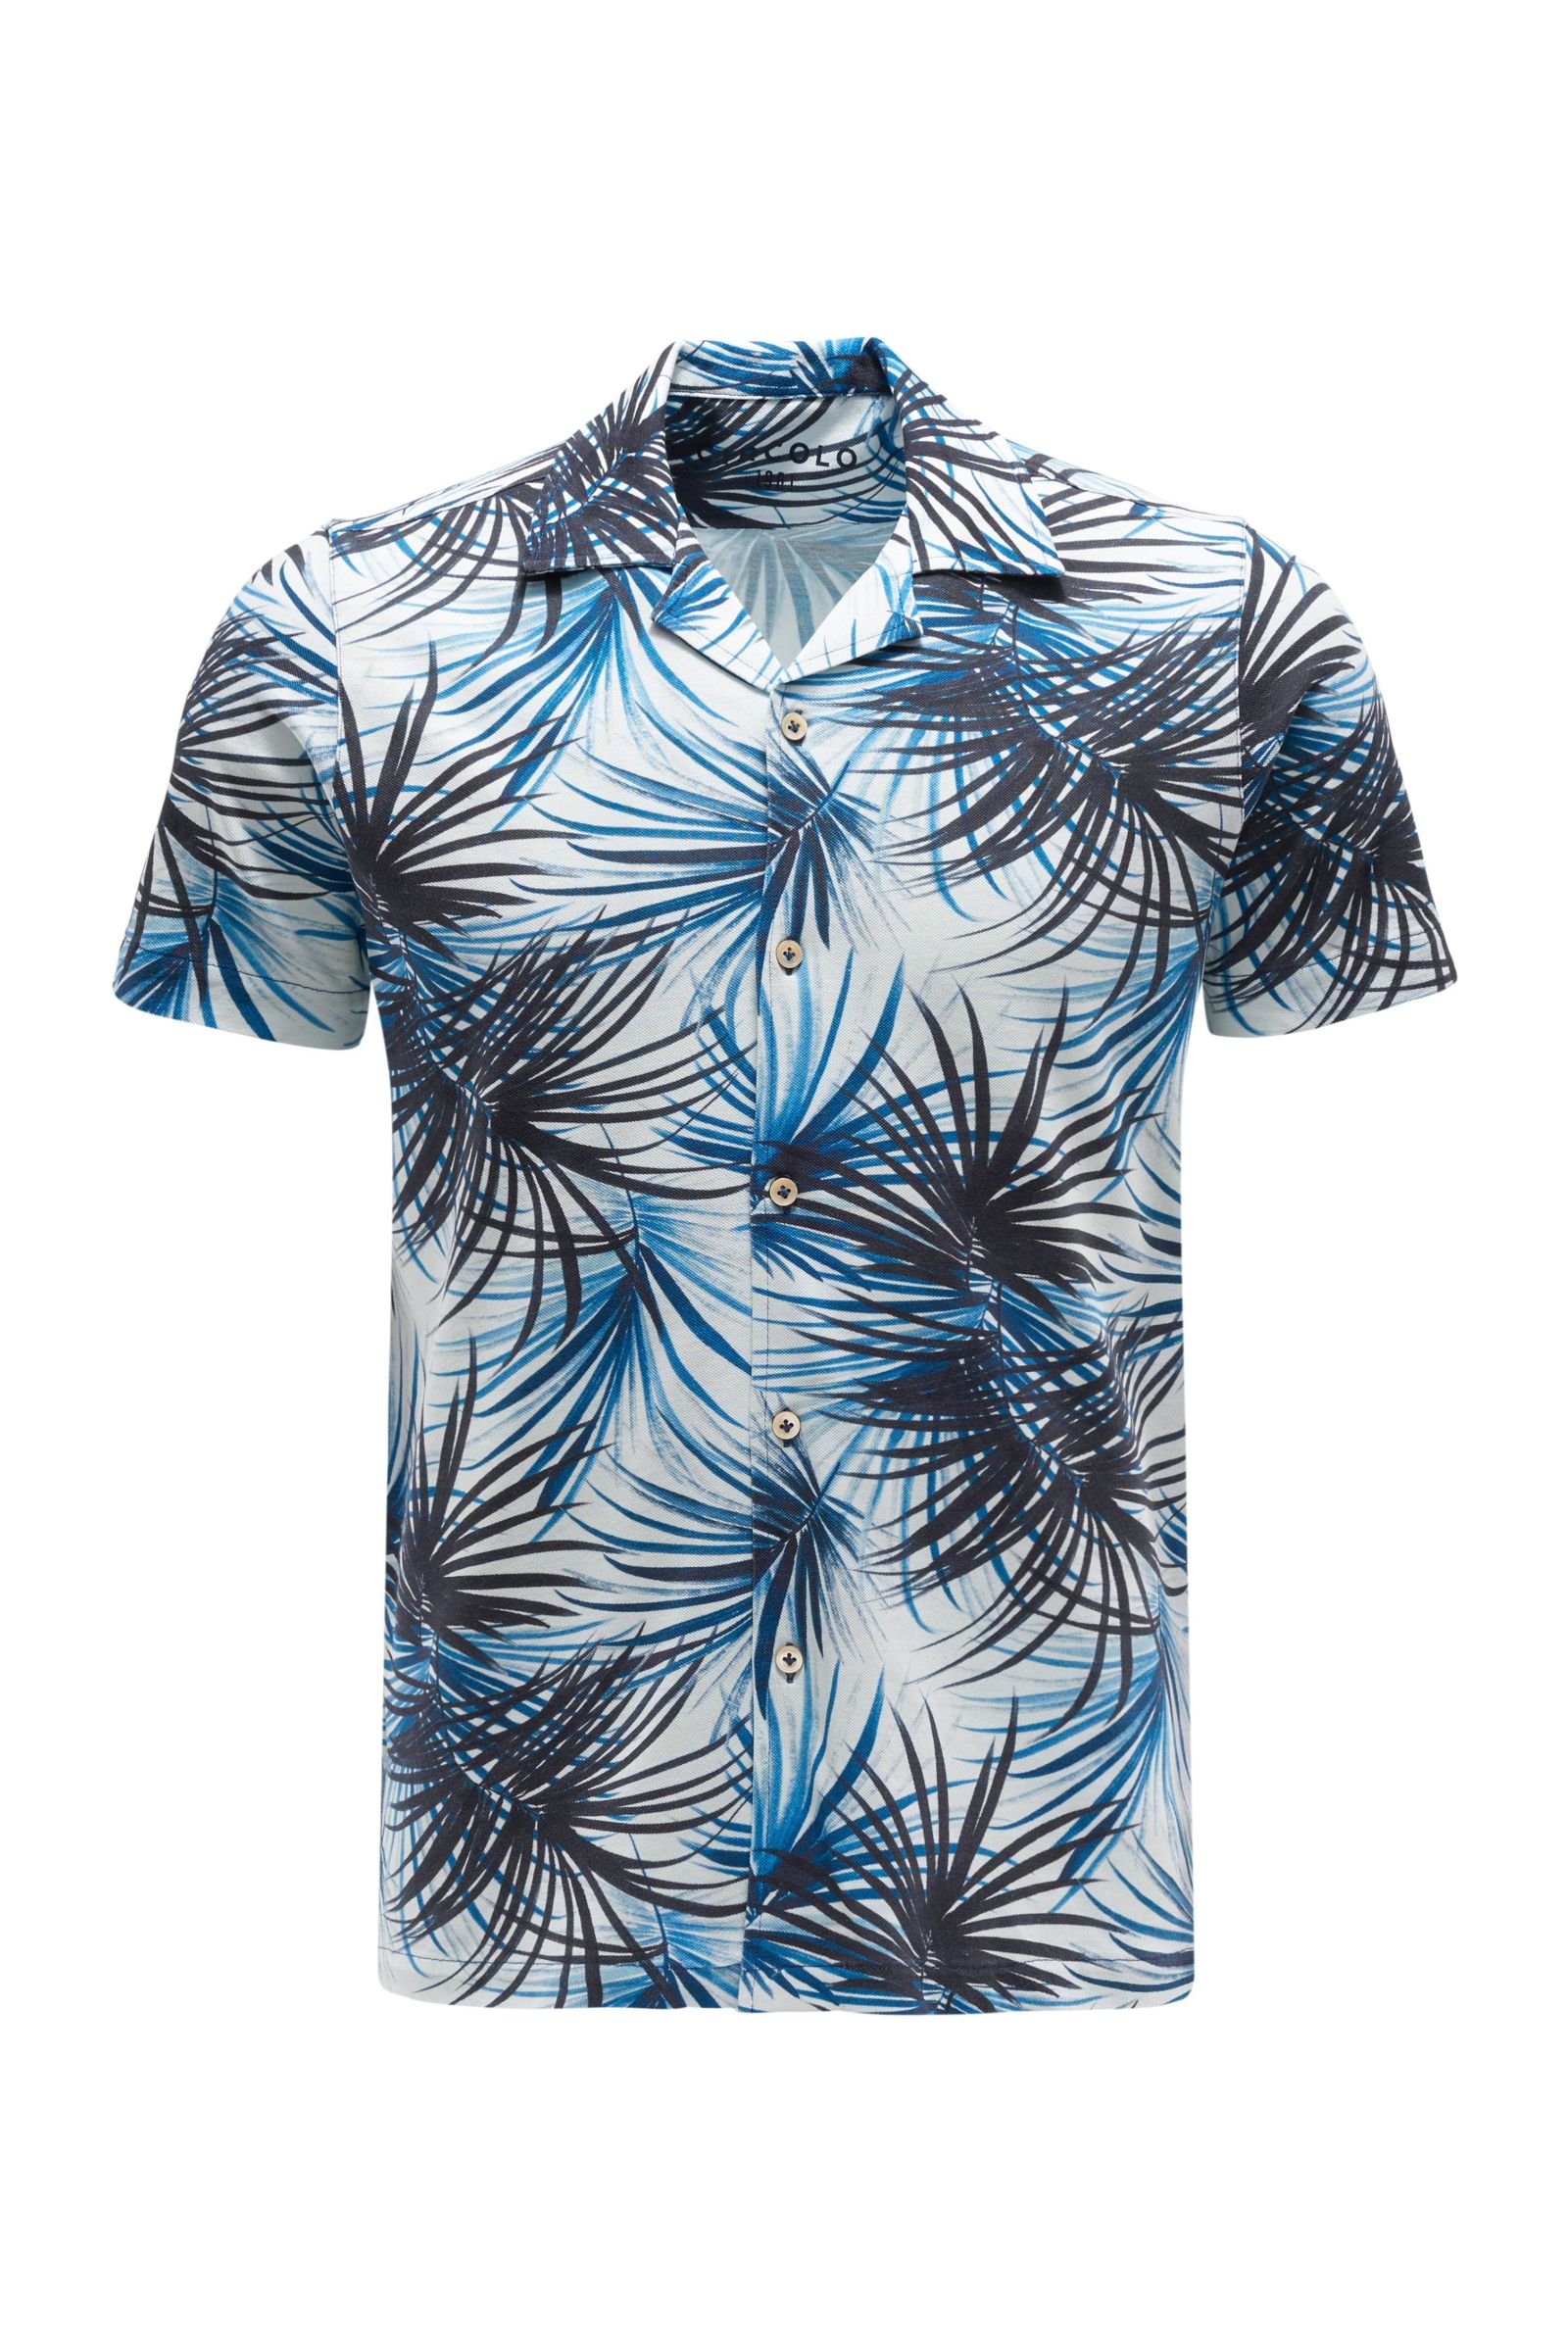 Short sleeve shirt Cuban collar blue patterned